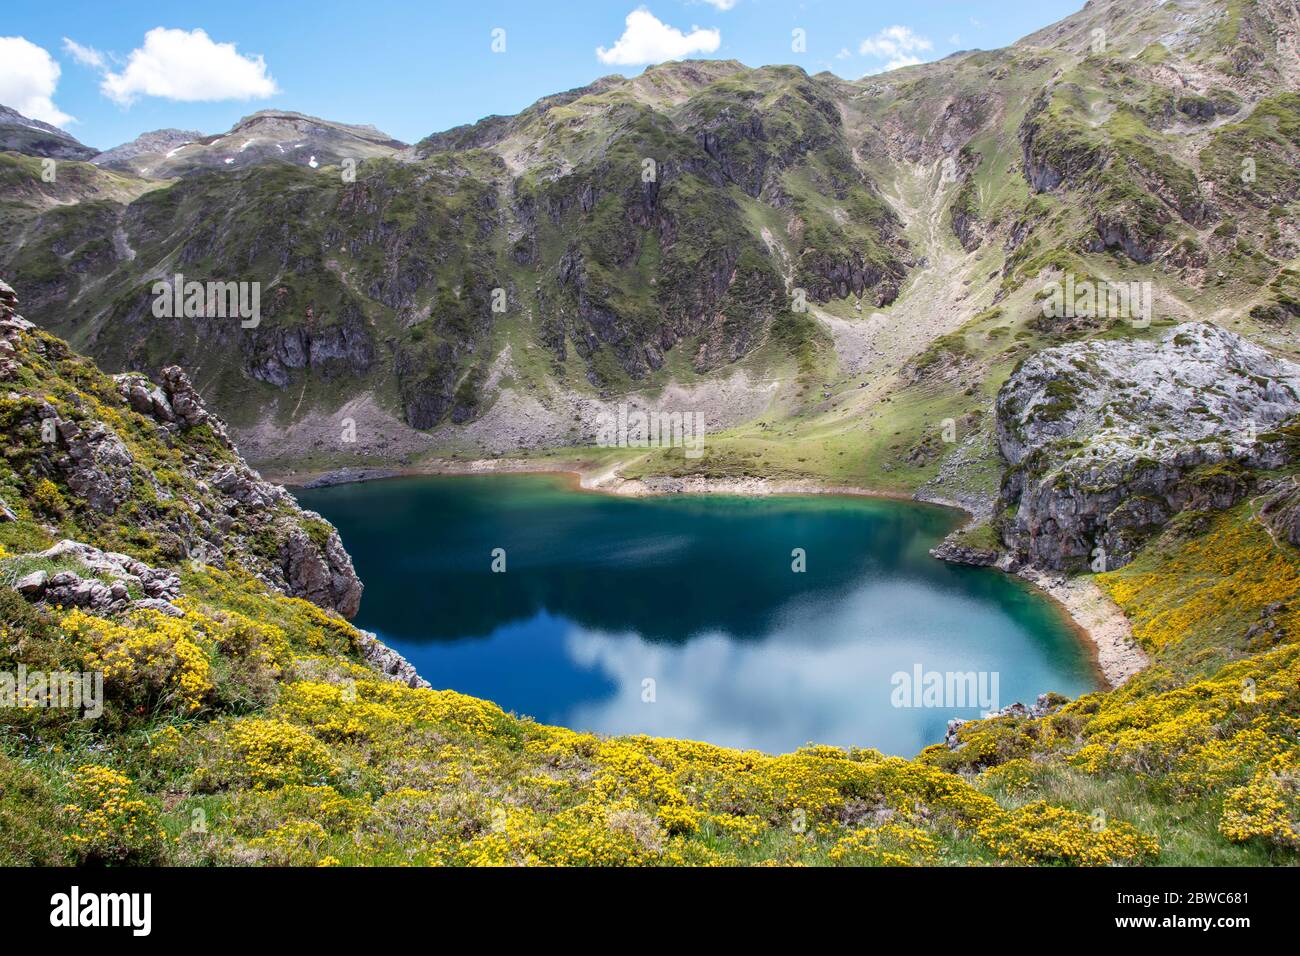 Calabazosa ou Lac de montagne profonde noire dans le parc national de Sexiedo, Espagne, Asturies. Lacs de montagne de Saliencia. Eau bleu foncé. Banque D'Images